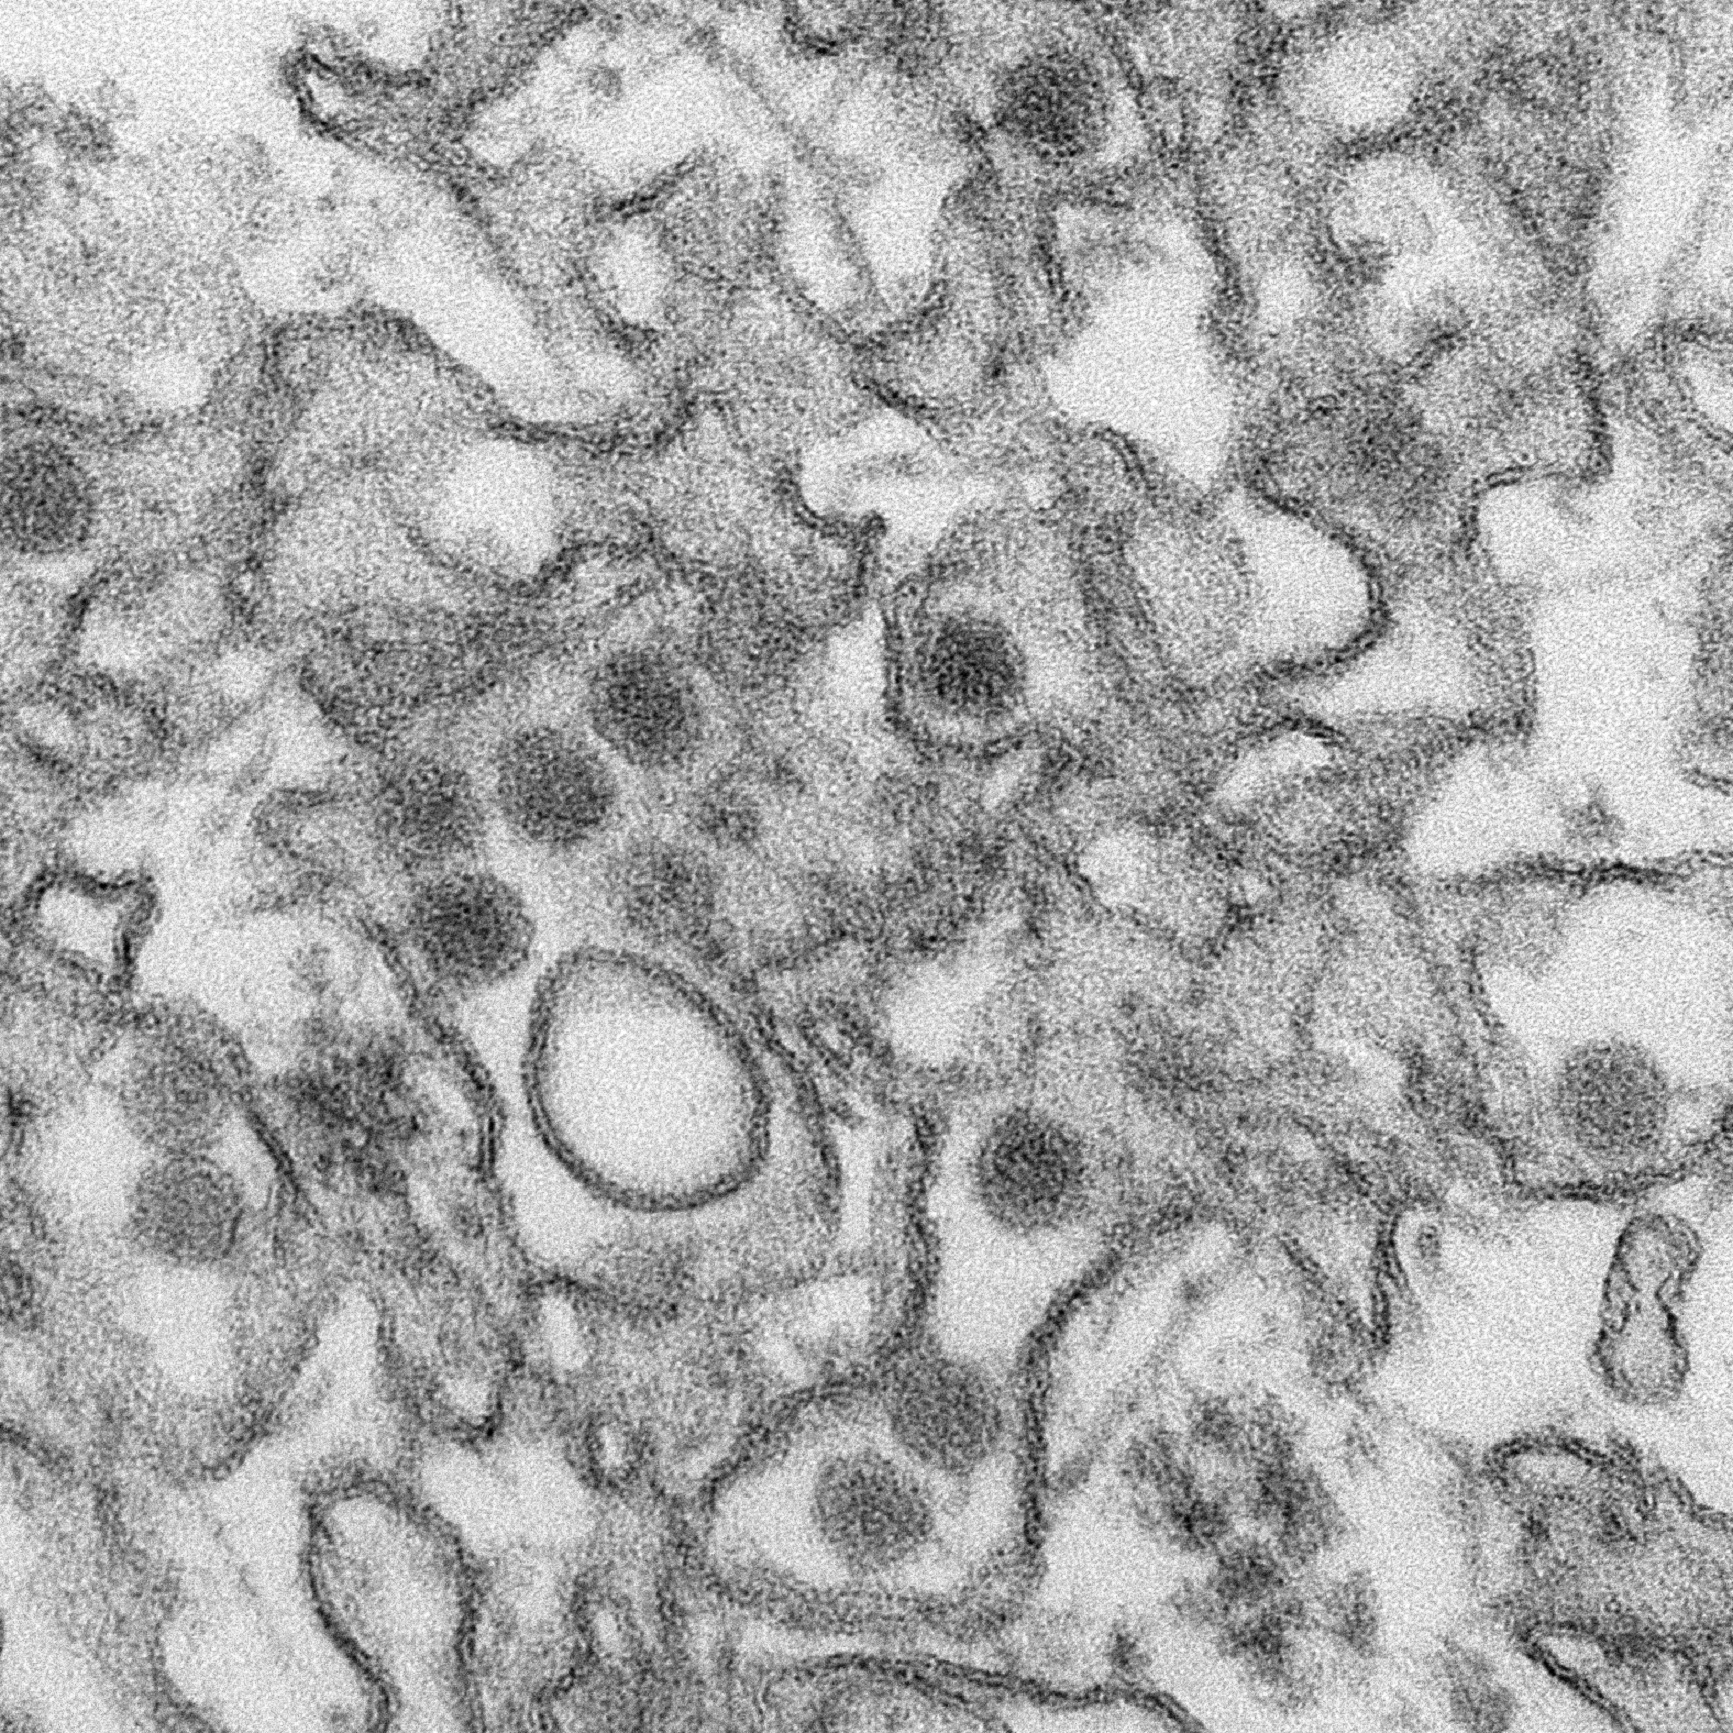 Micrografía electrónica por transmisión (TEM) del virus Zika. Imagen: Cynthia Goldsmith. Fuente: CDC.